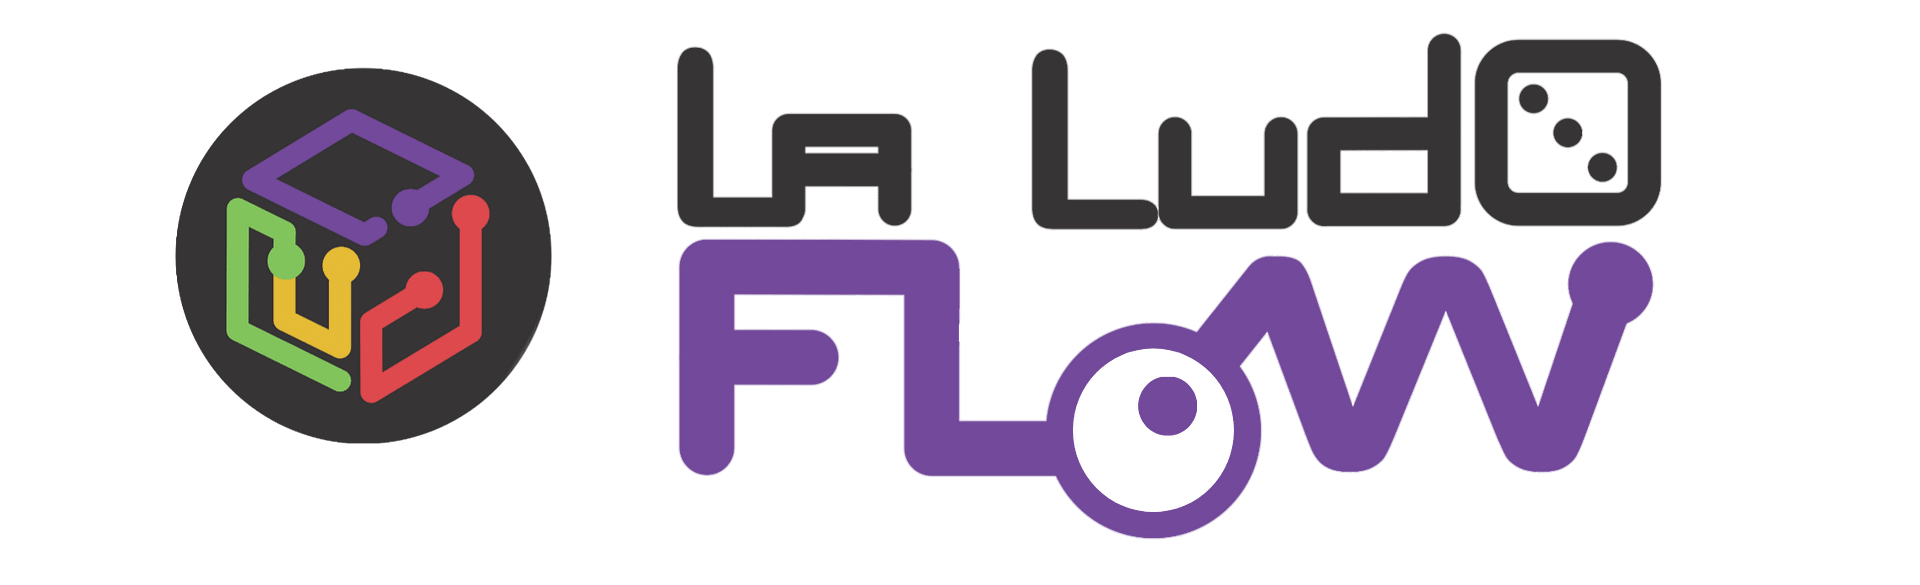 La Ludo Flow - plataforma de aprendizaje Ludico